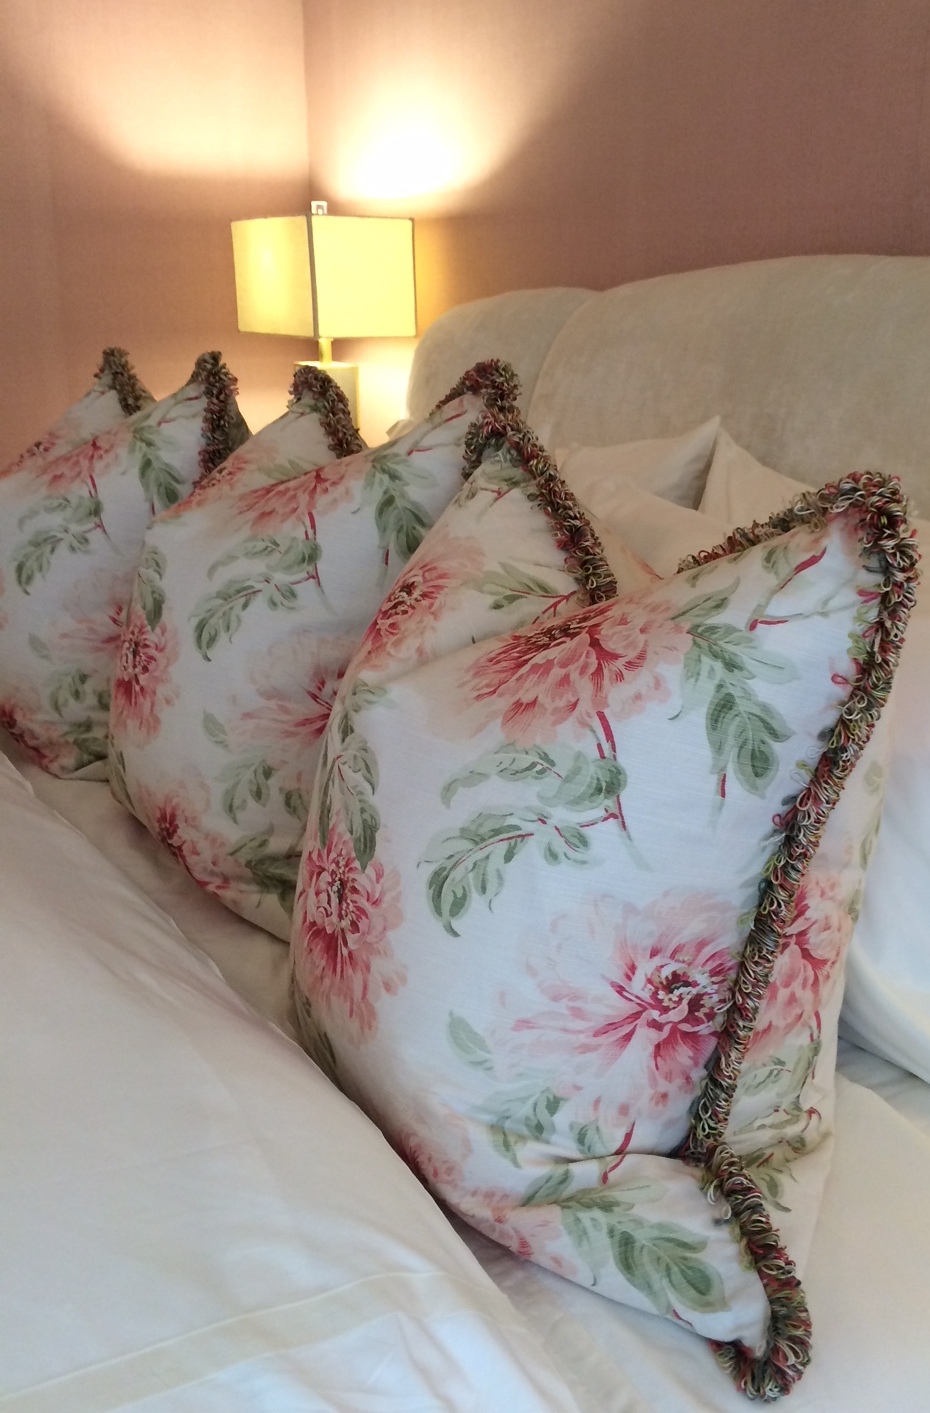 Colorado Mountain Estate Interior pillows on bed